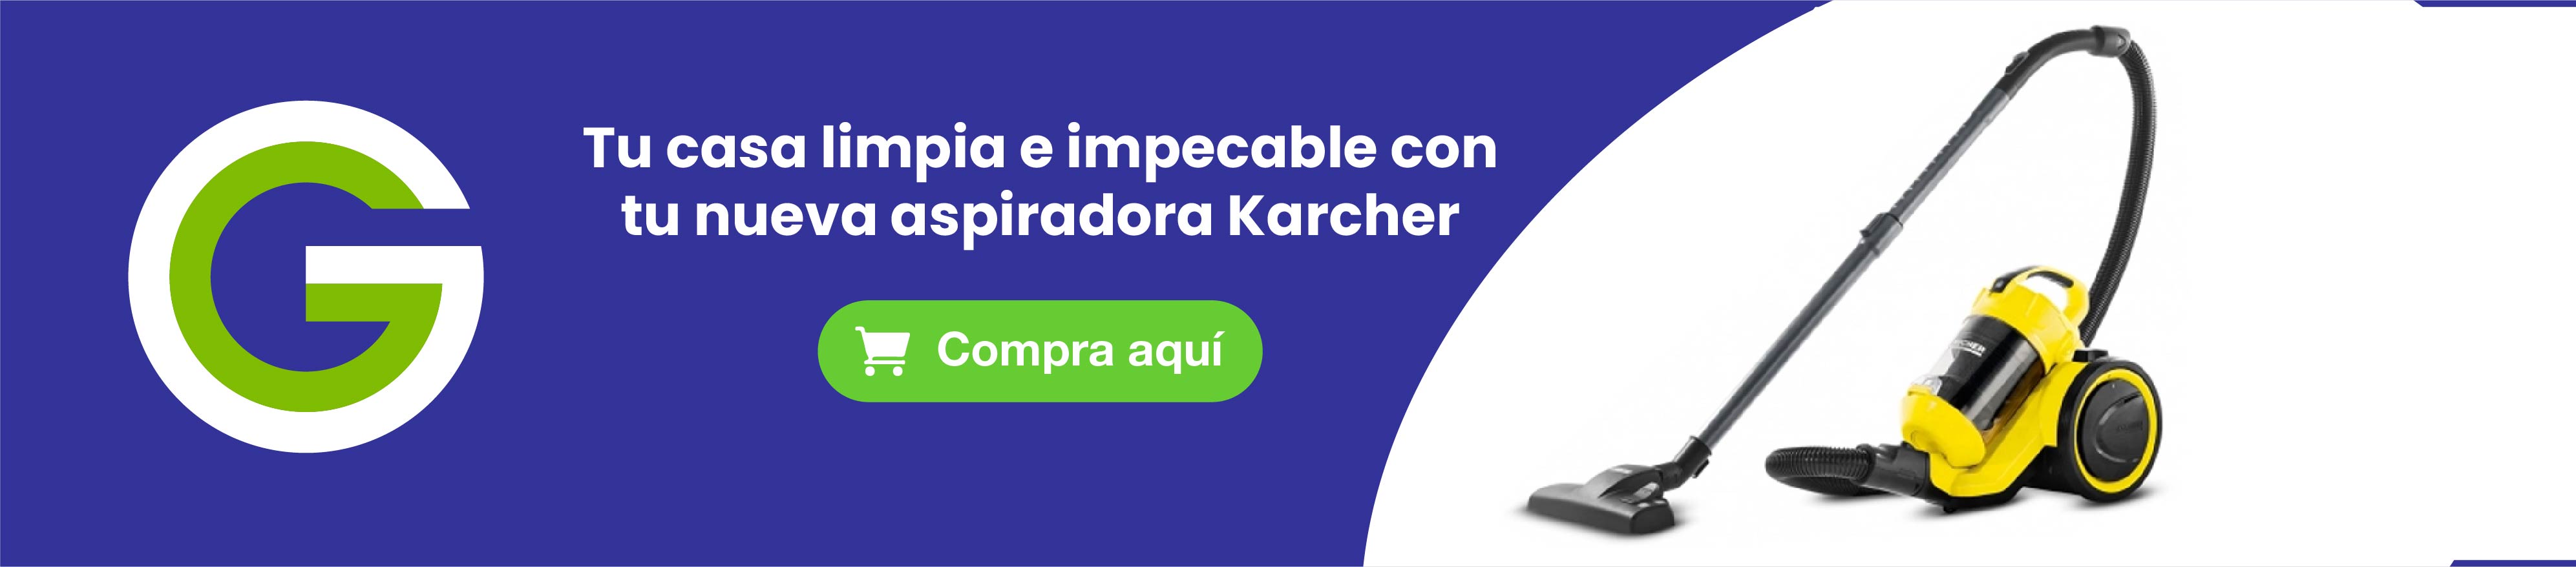 Aspiradora Karcher VC3 Plus Kap